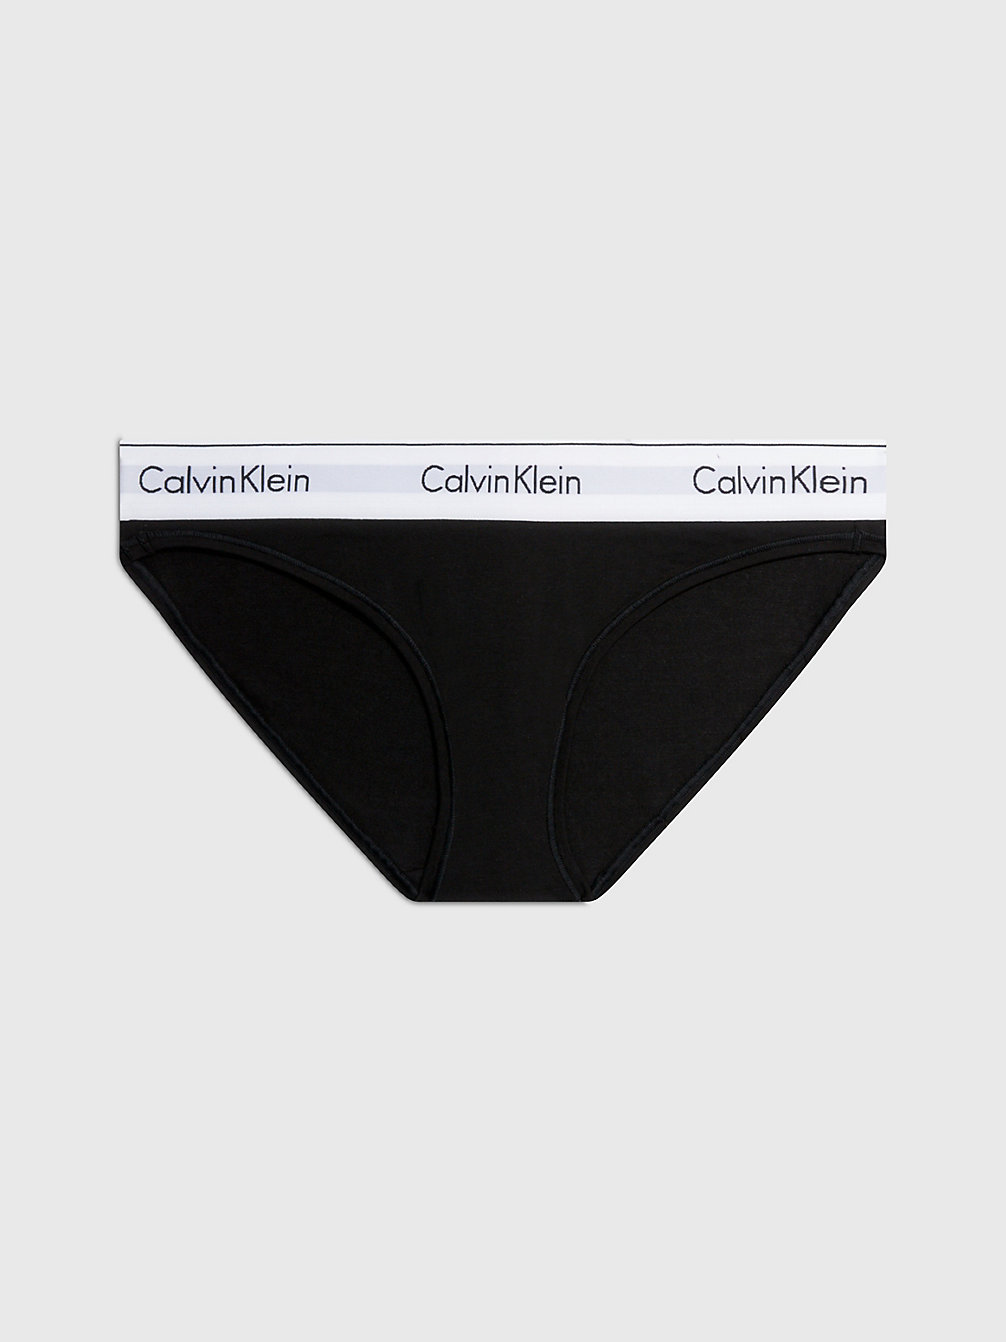 BLACK > Слипы - Modern Cotton > undefined Женщины - Calvin Klein